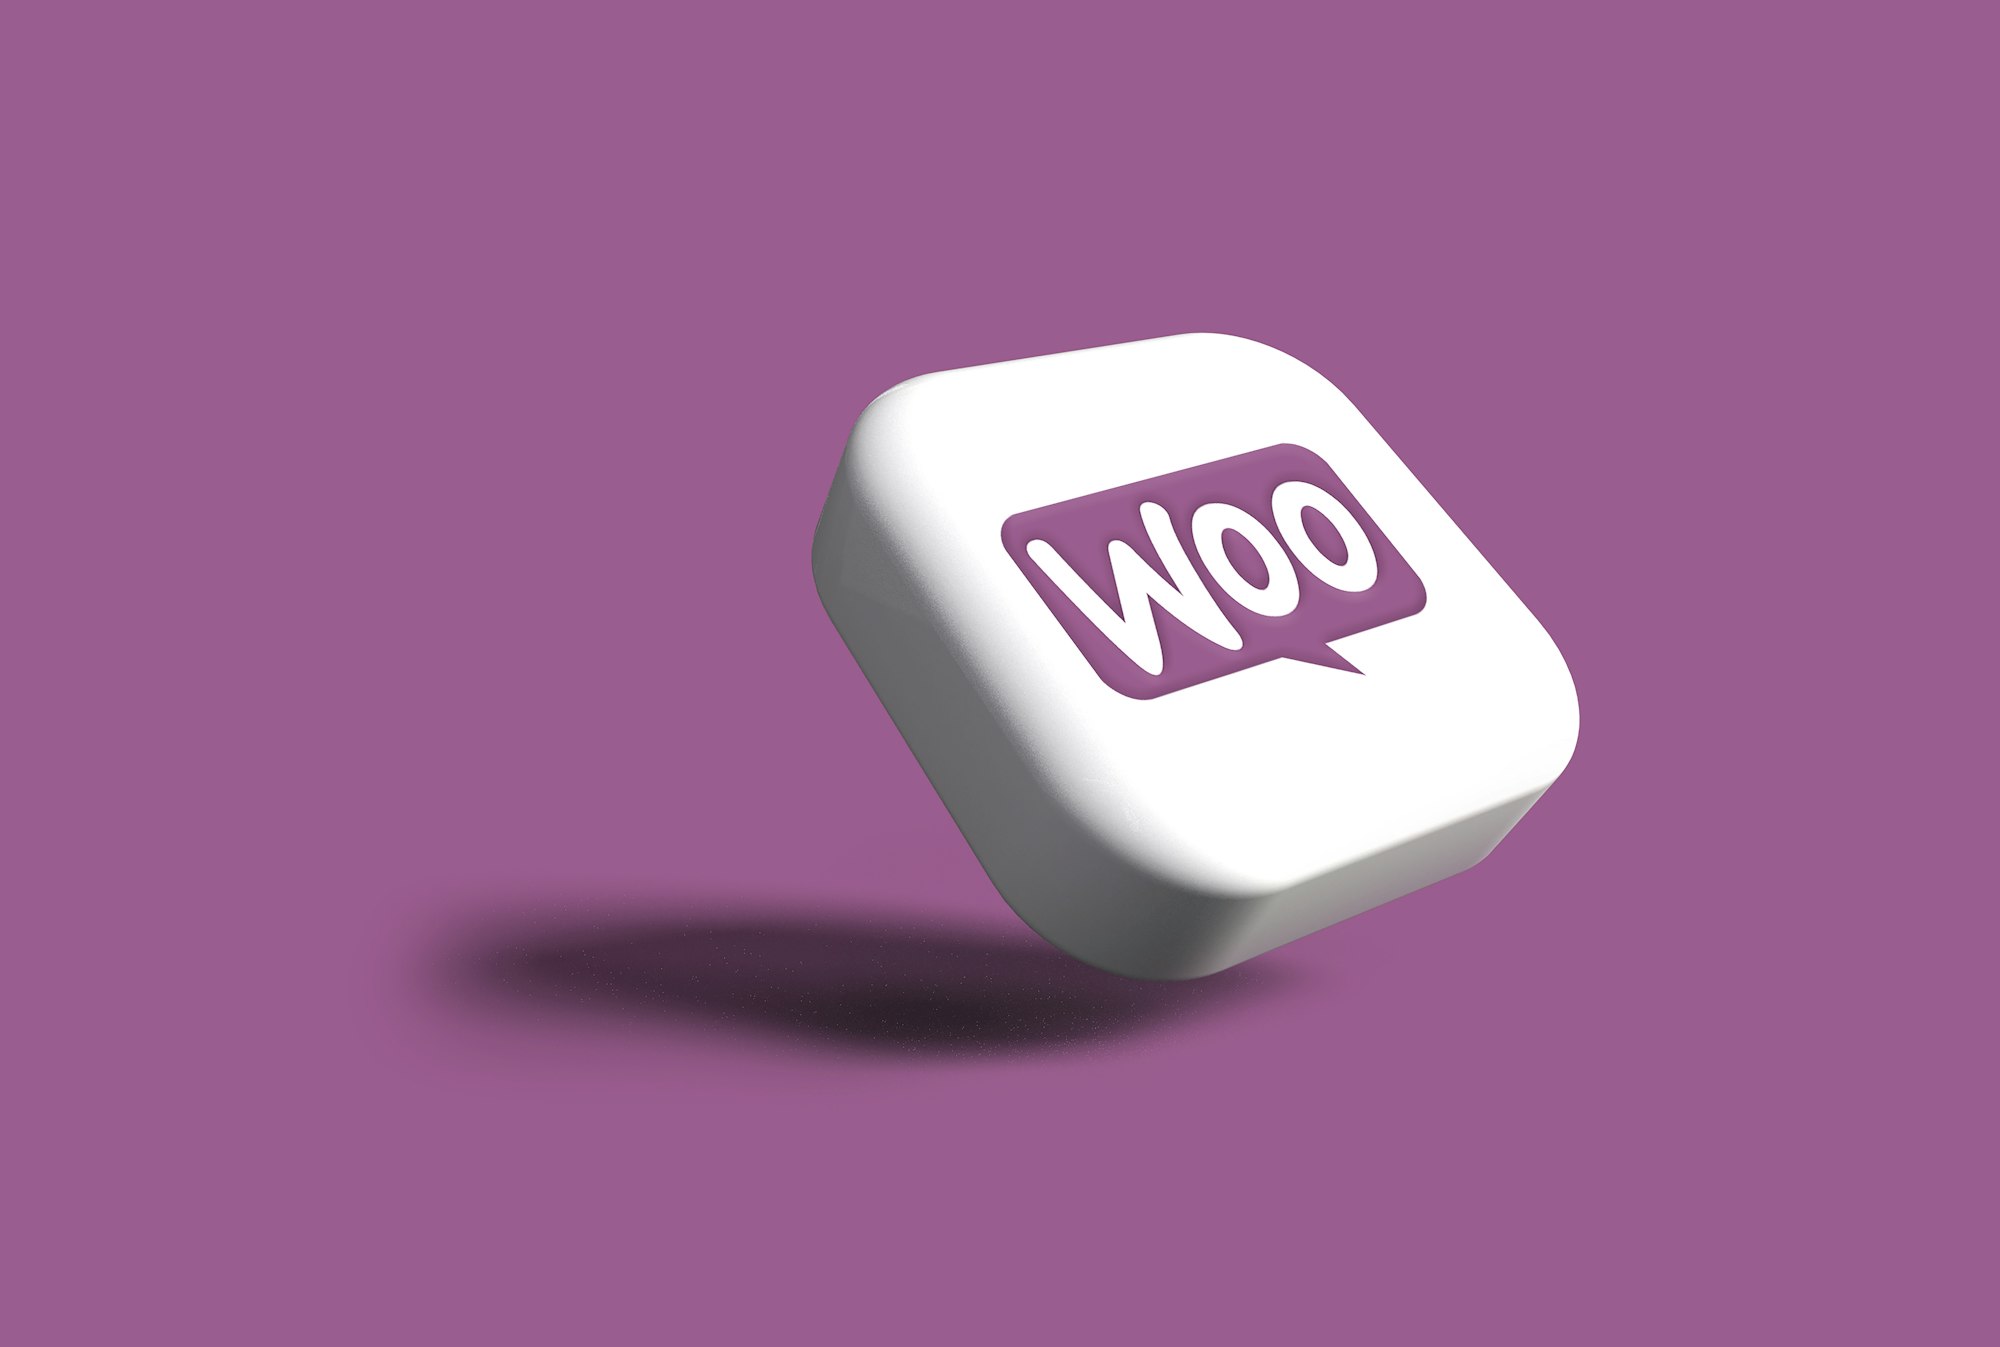 Image of the WooCommerce plugin logo